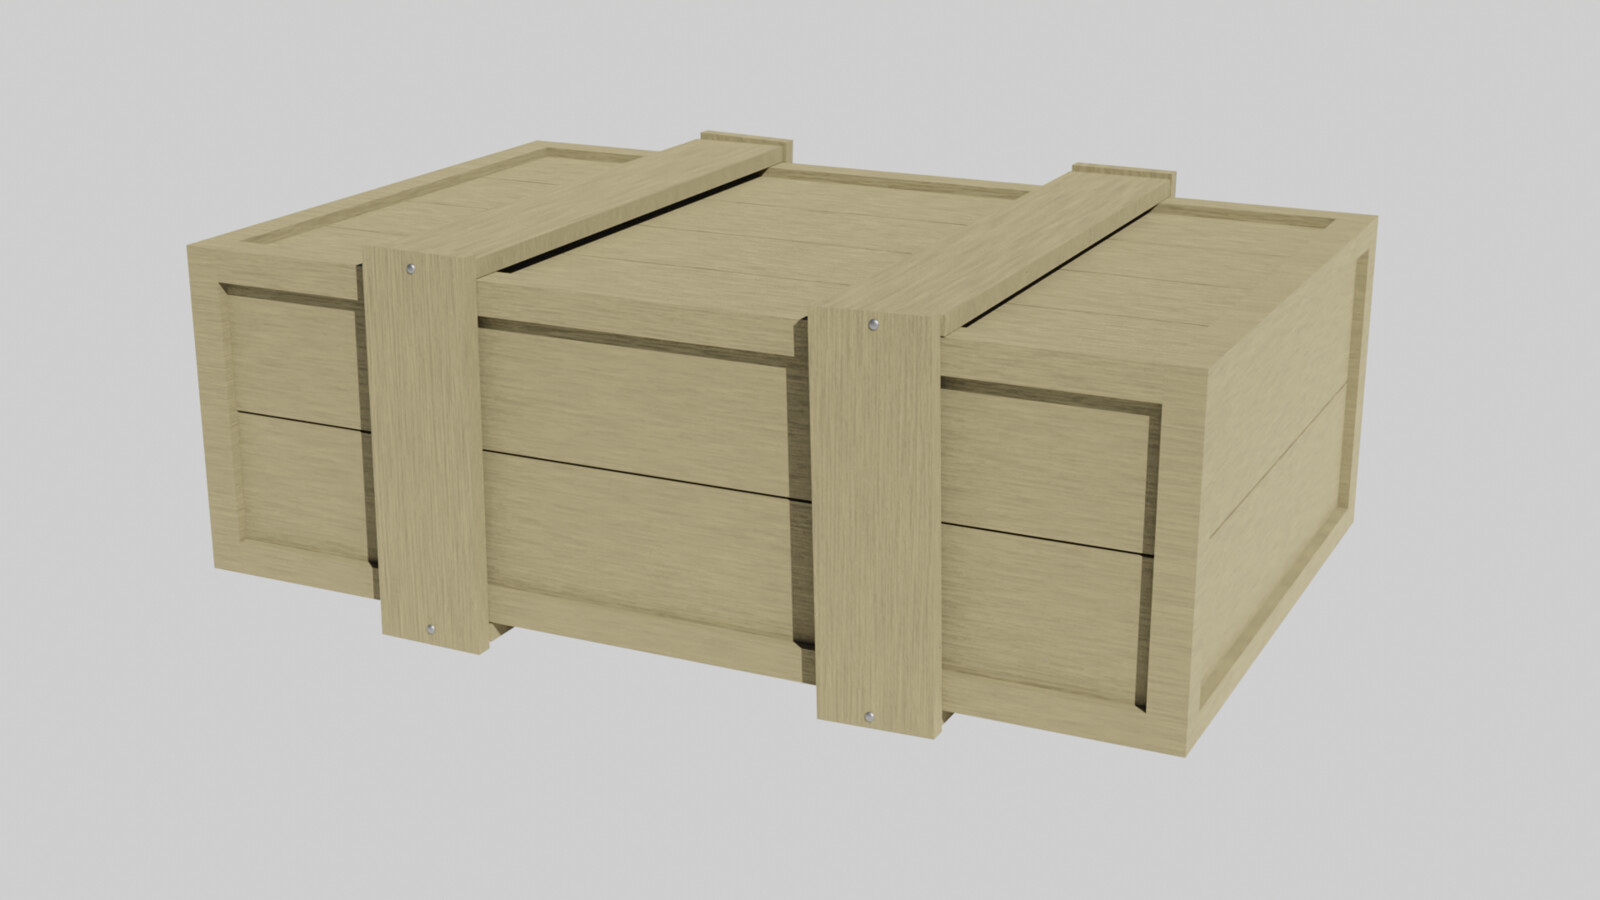 Wooden Crate 5 Render